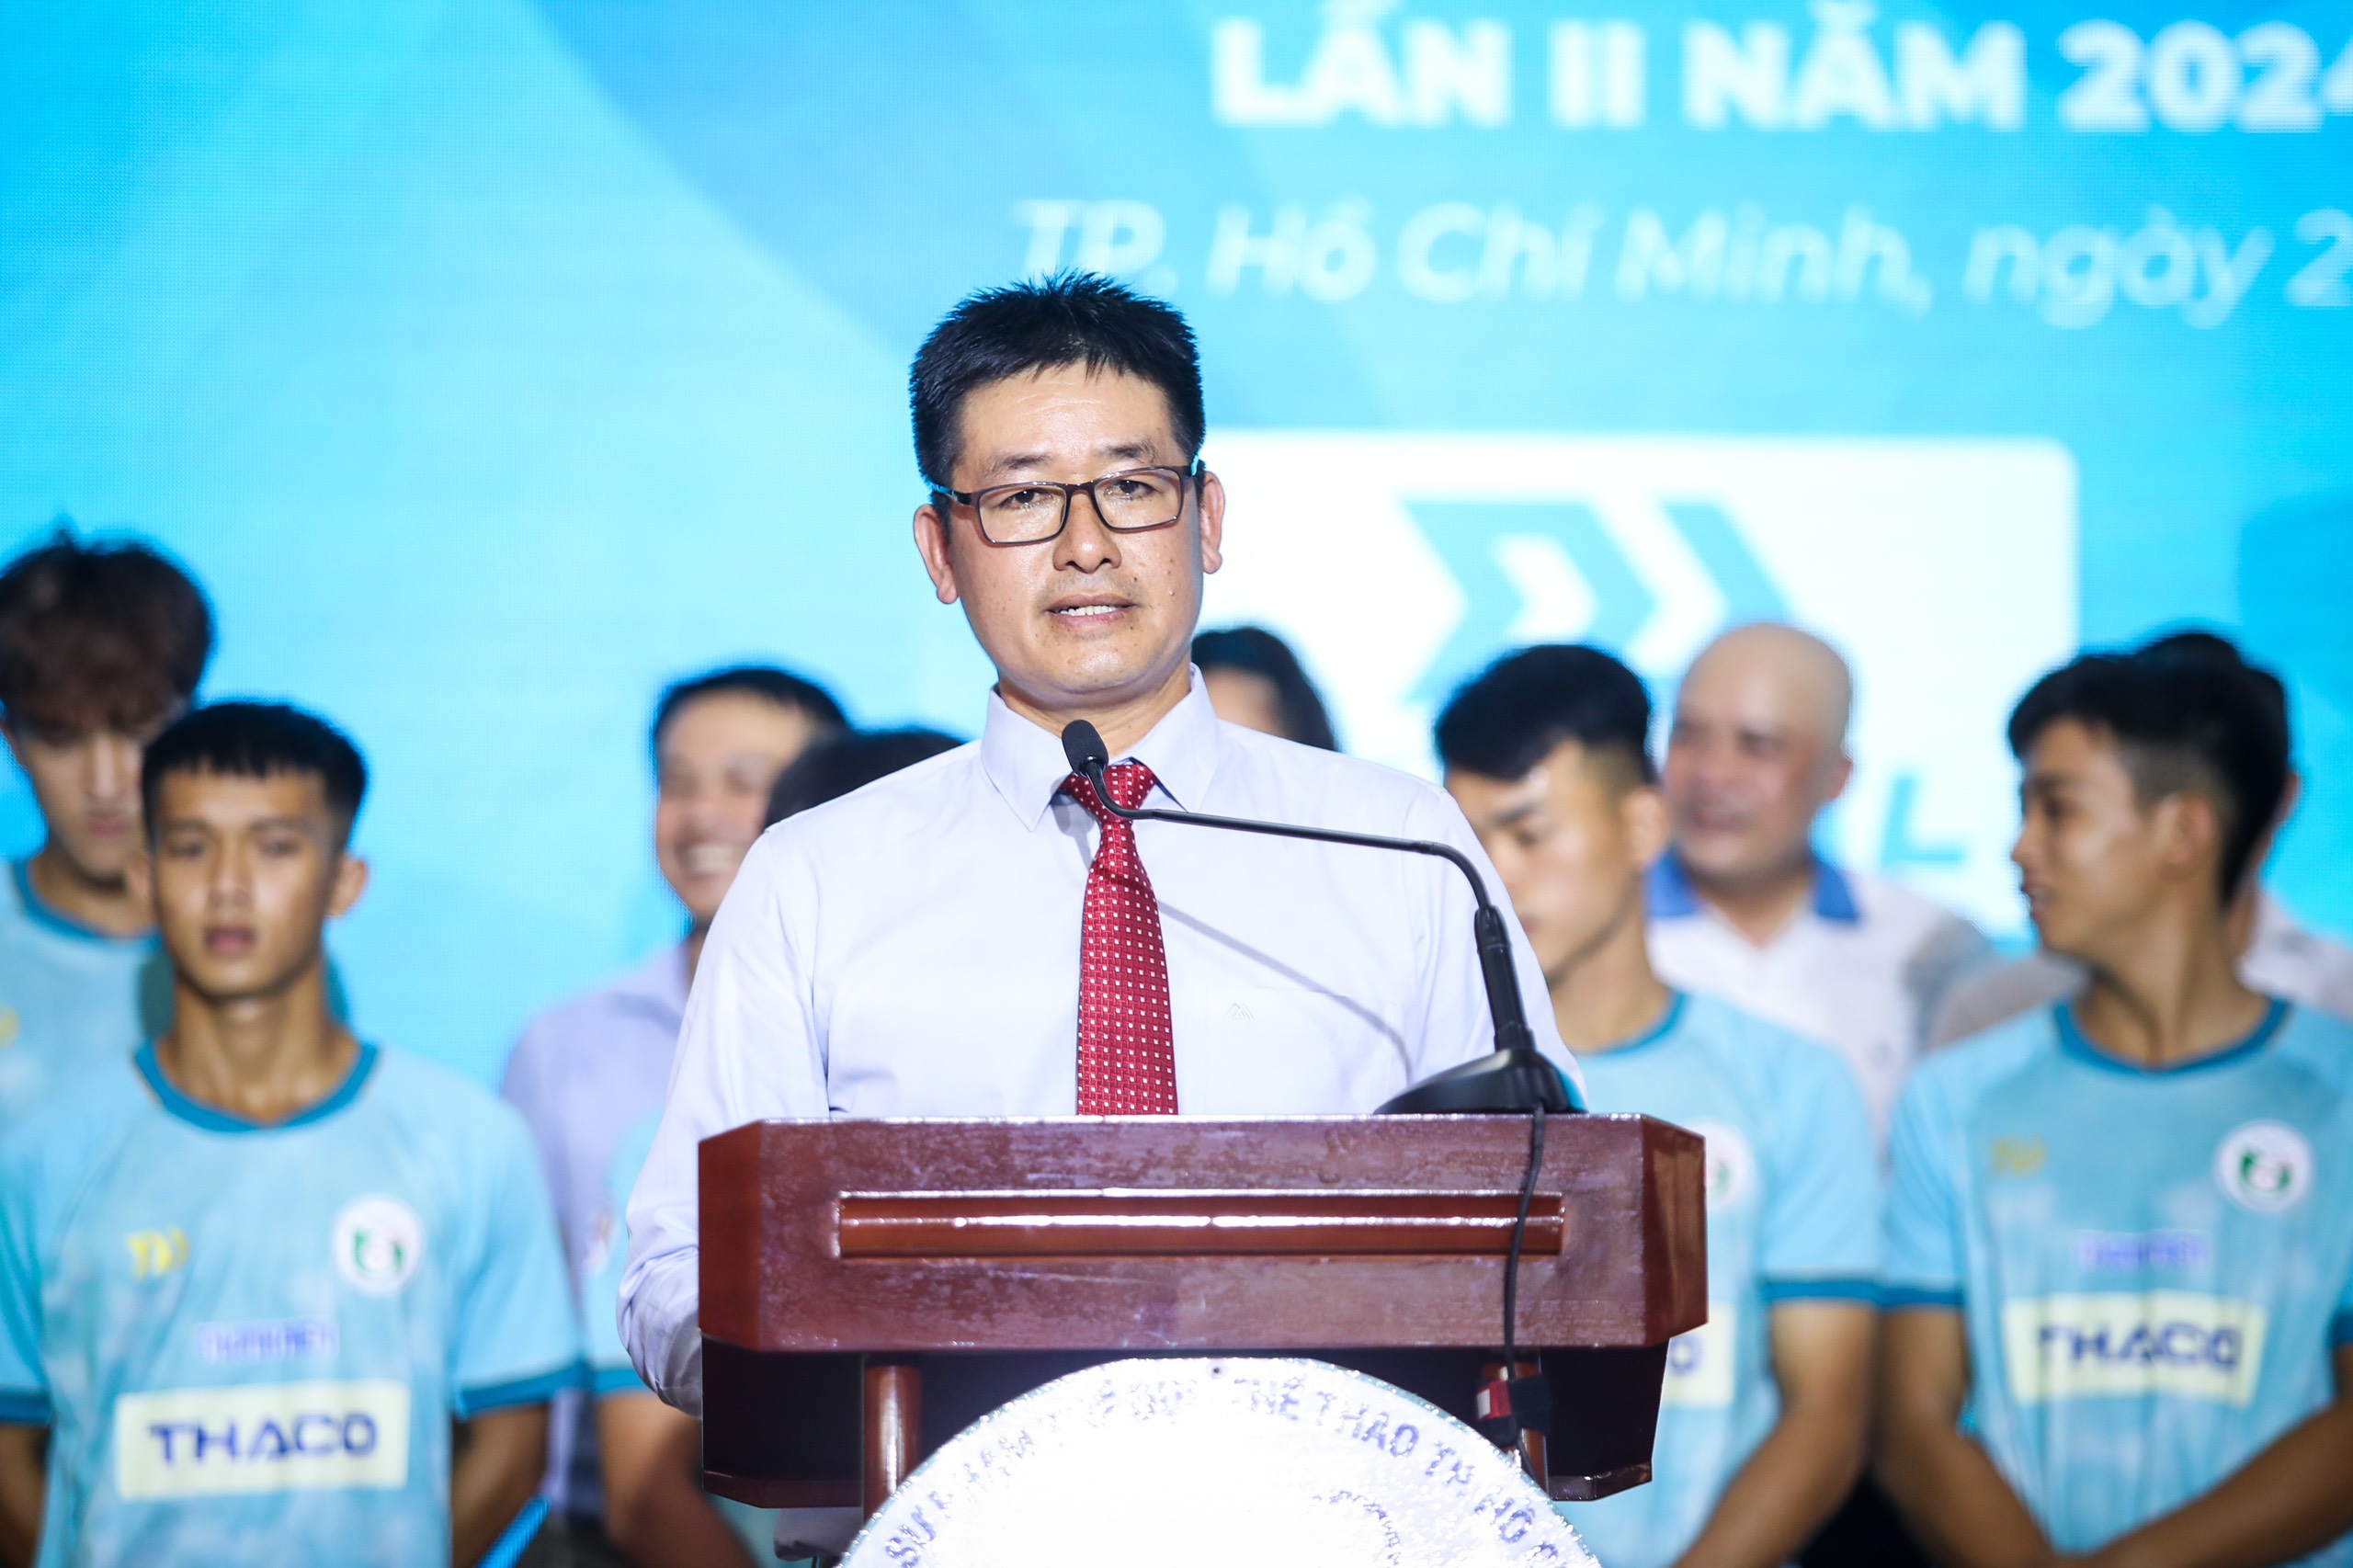 Tiến sĩ Nguyễn Kế Bình, Bí thư Đảng ủy, Chủ tịch Hội đồng trường, Trường ĐH Sư phạm TDTT TP.HCM phát biểu